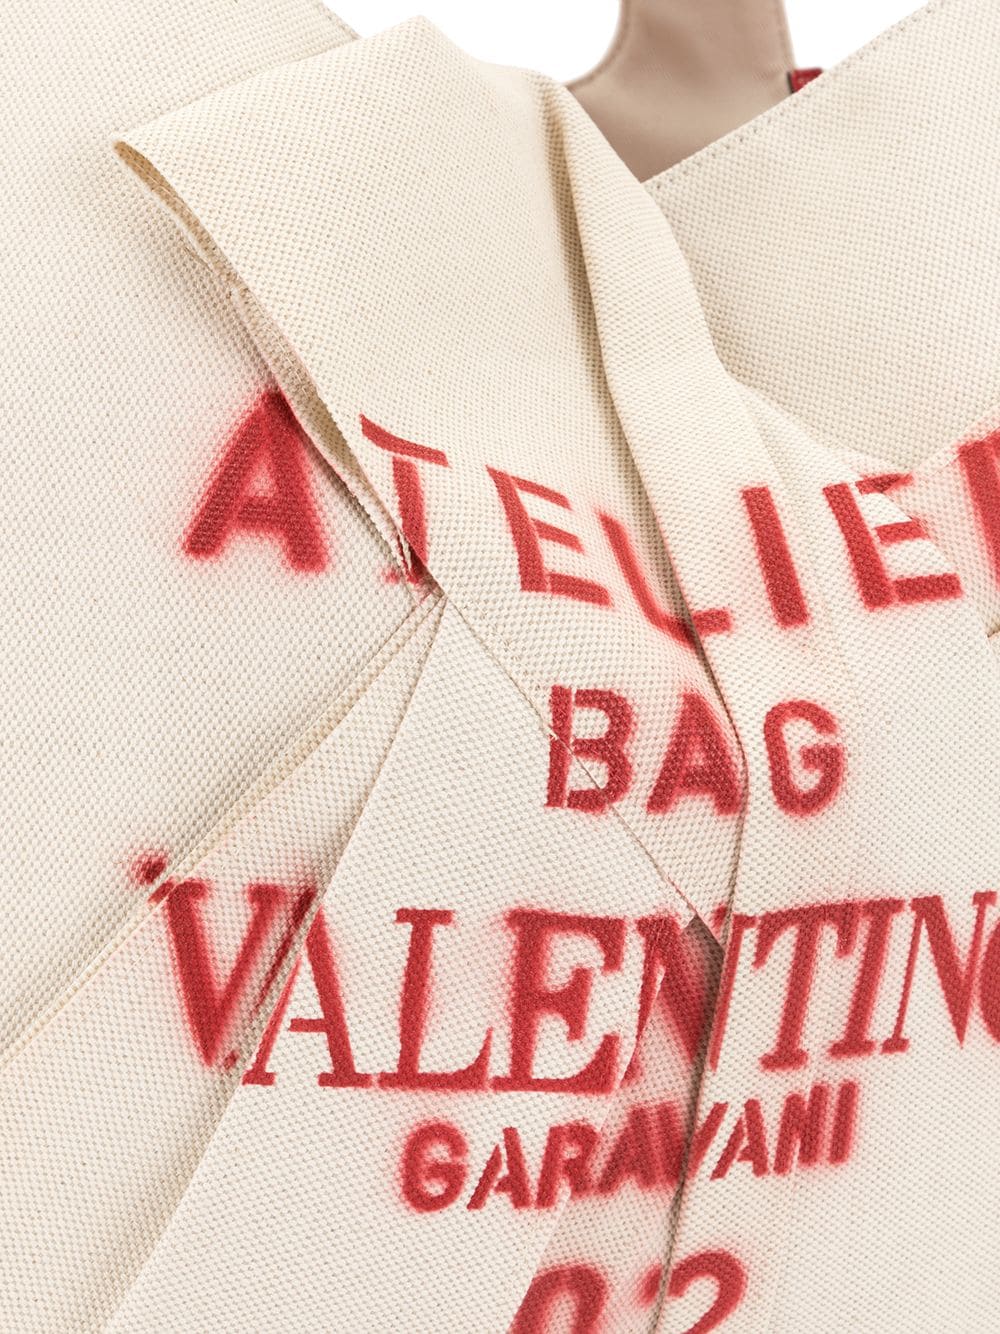 фото Valentino garavani сумка-тоут с логотипом граффити